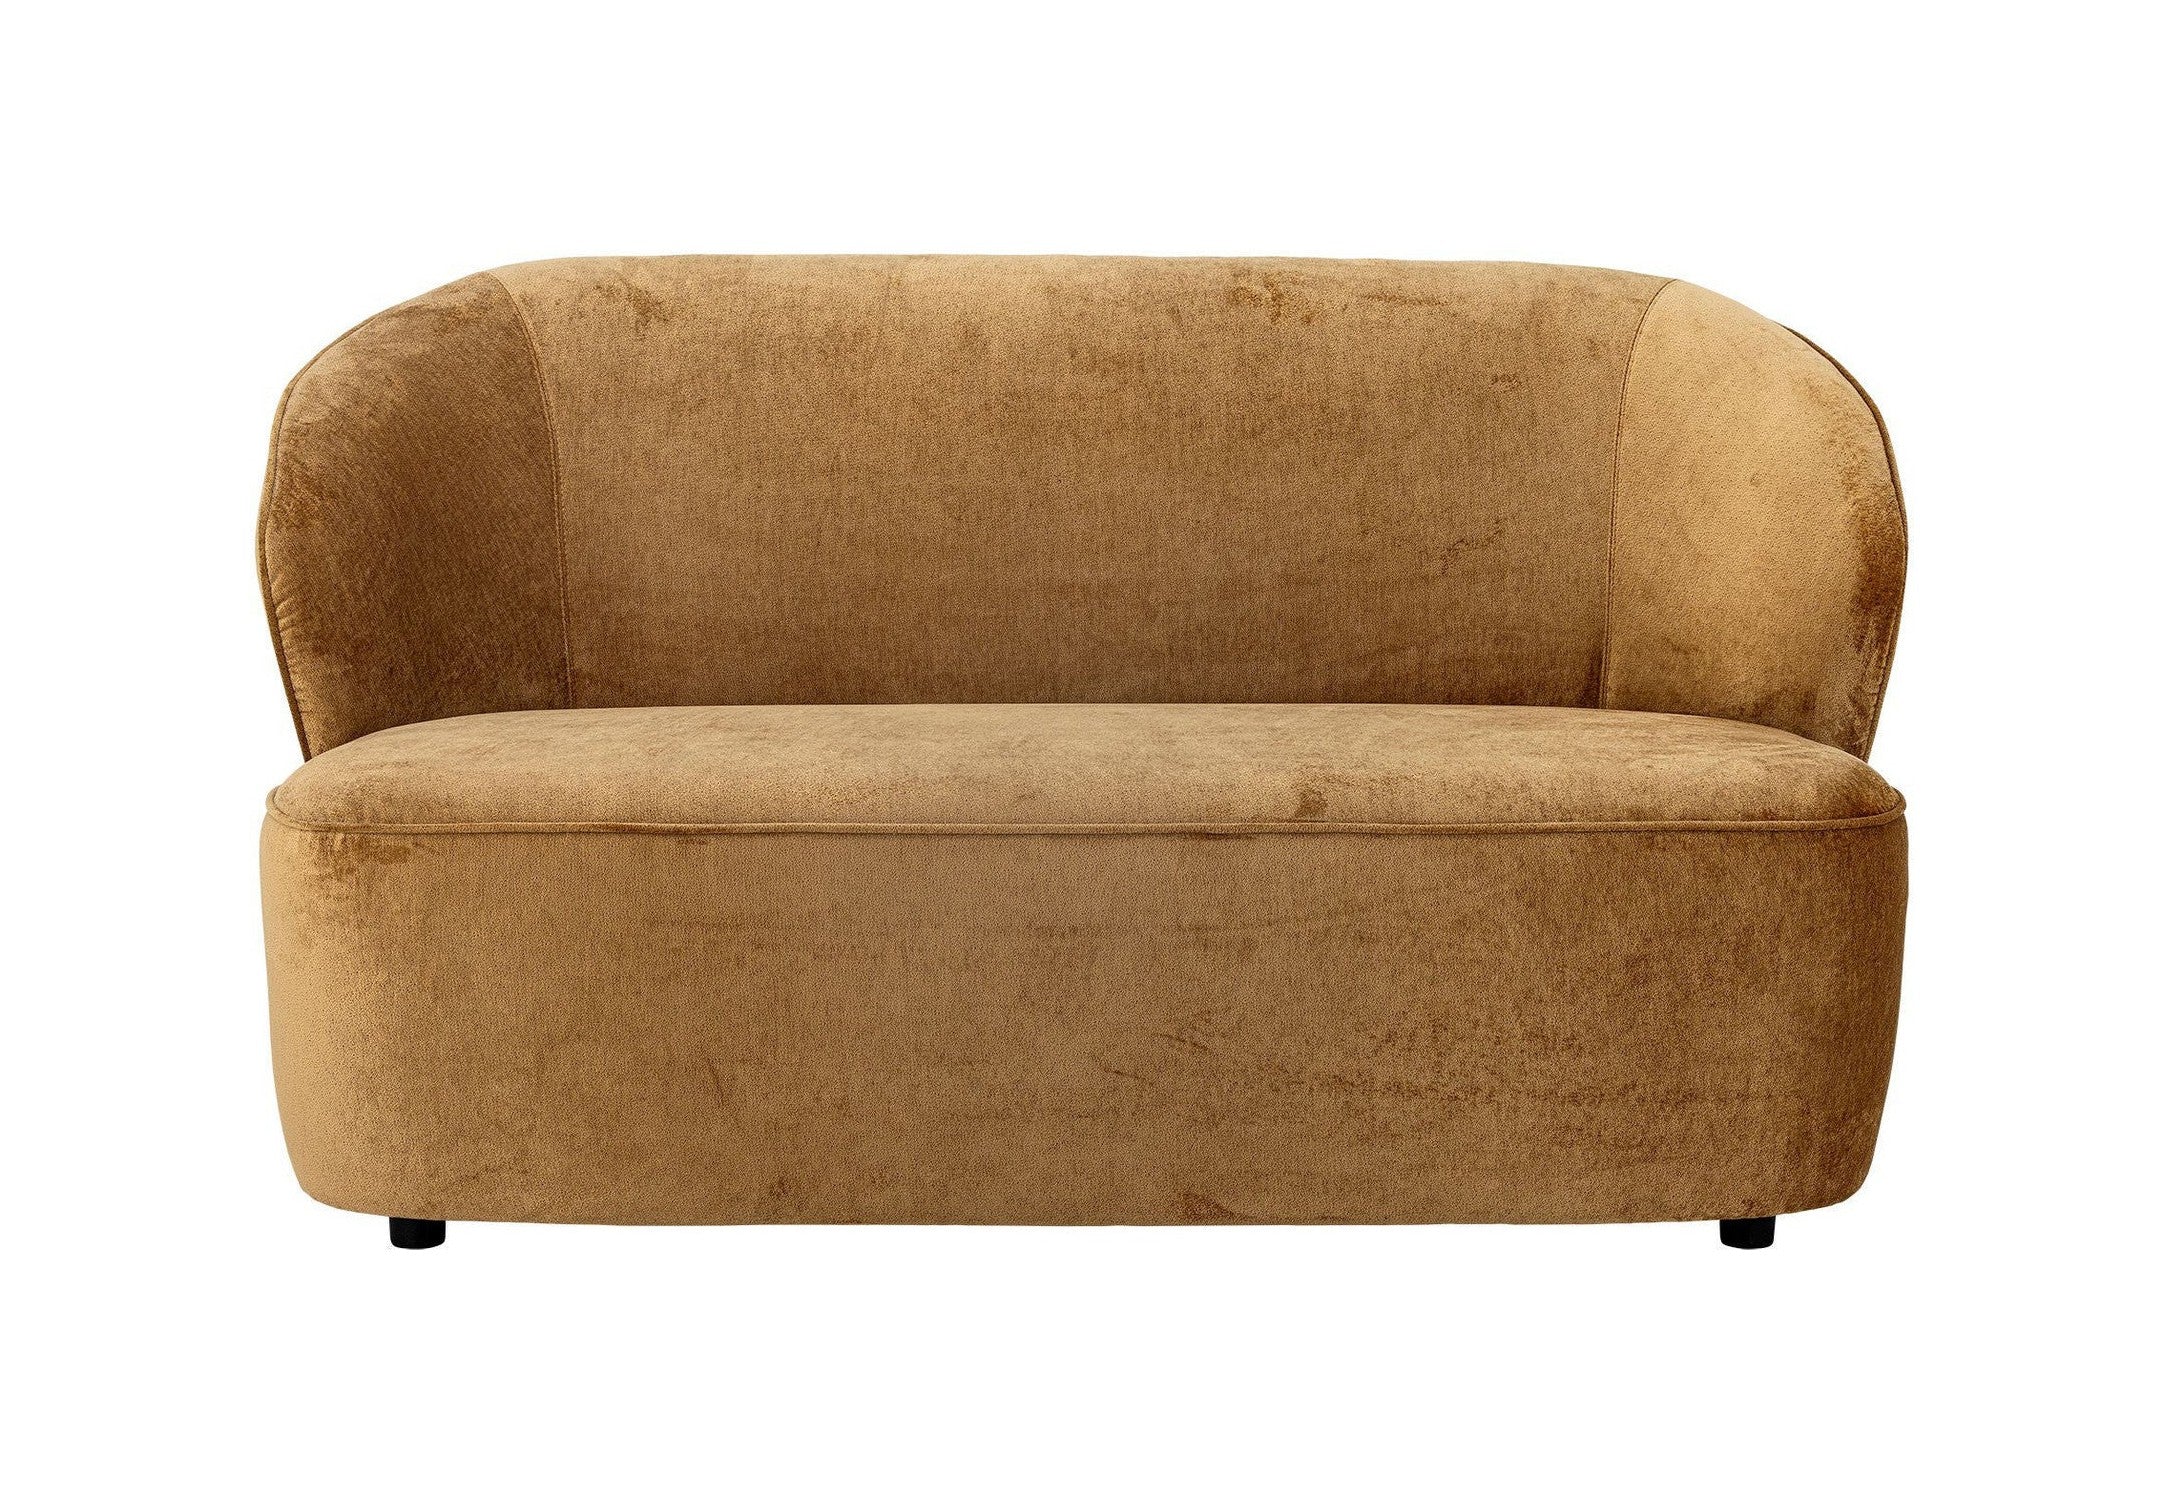 Creative Collection Almonde Sofa, Brown, Polyester